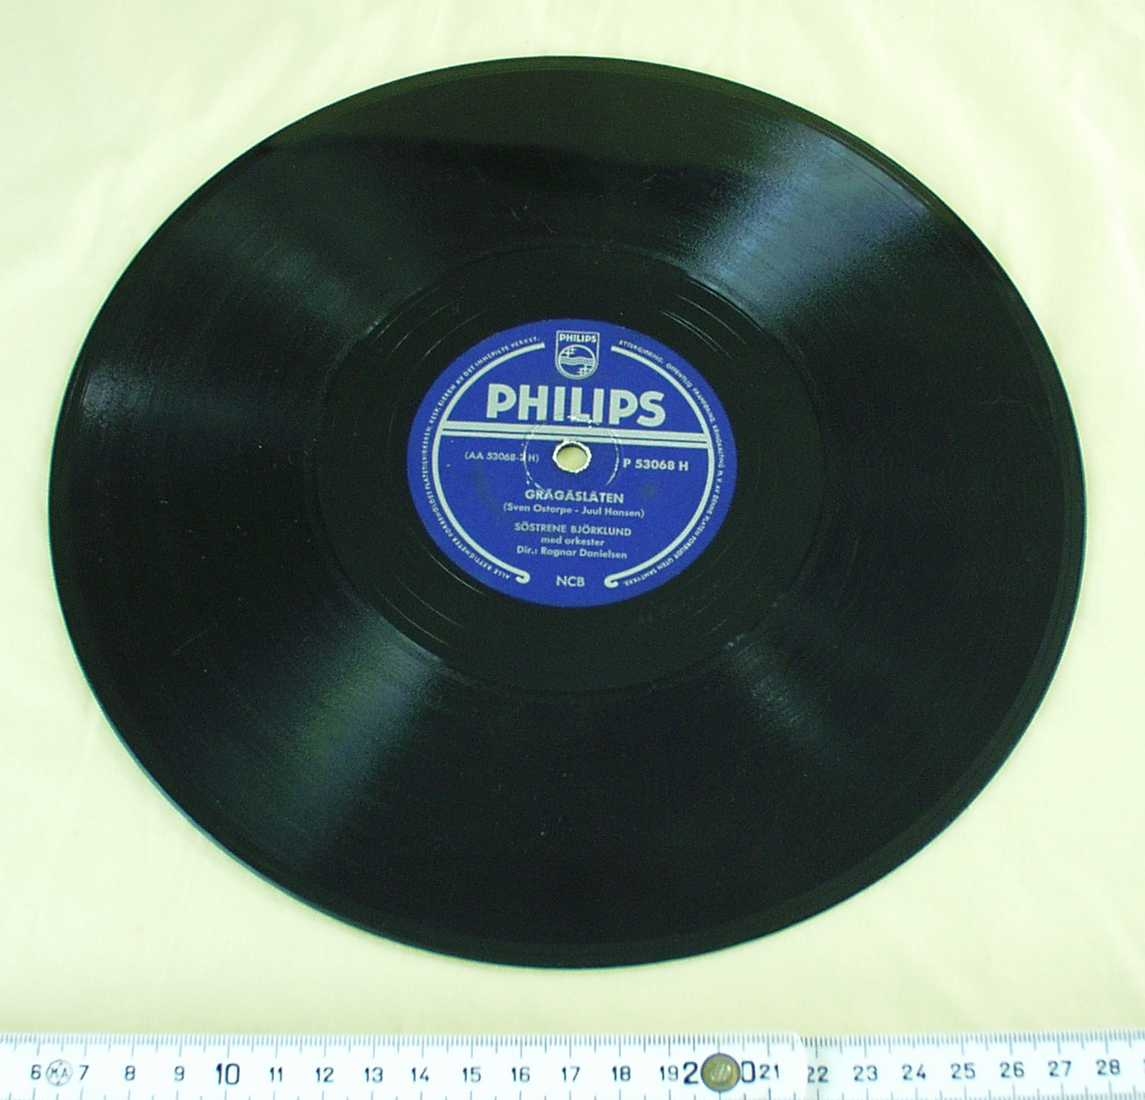 Grammofonplate. Sort med blå etikett. Sølvfarget skrift. Philips-logo